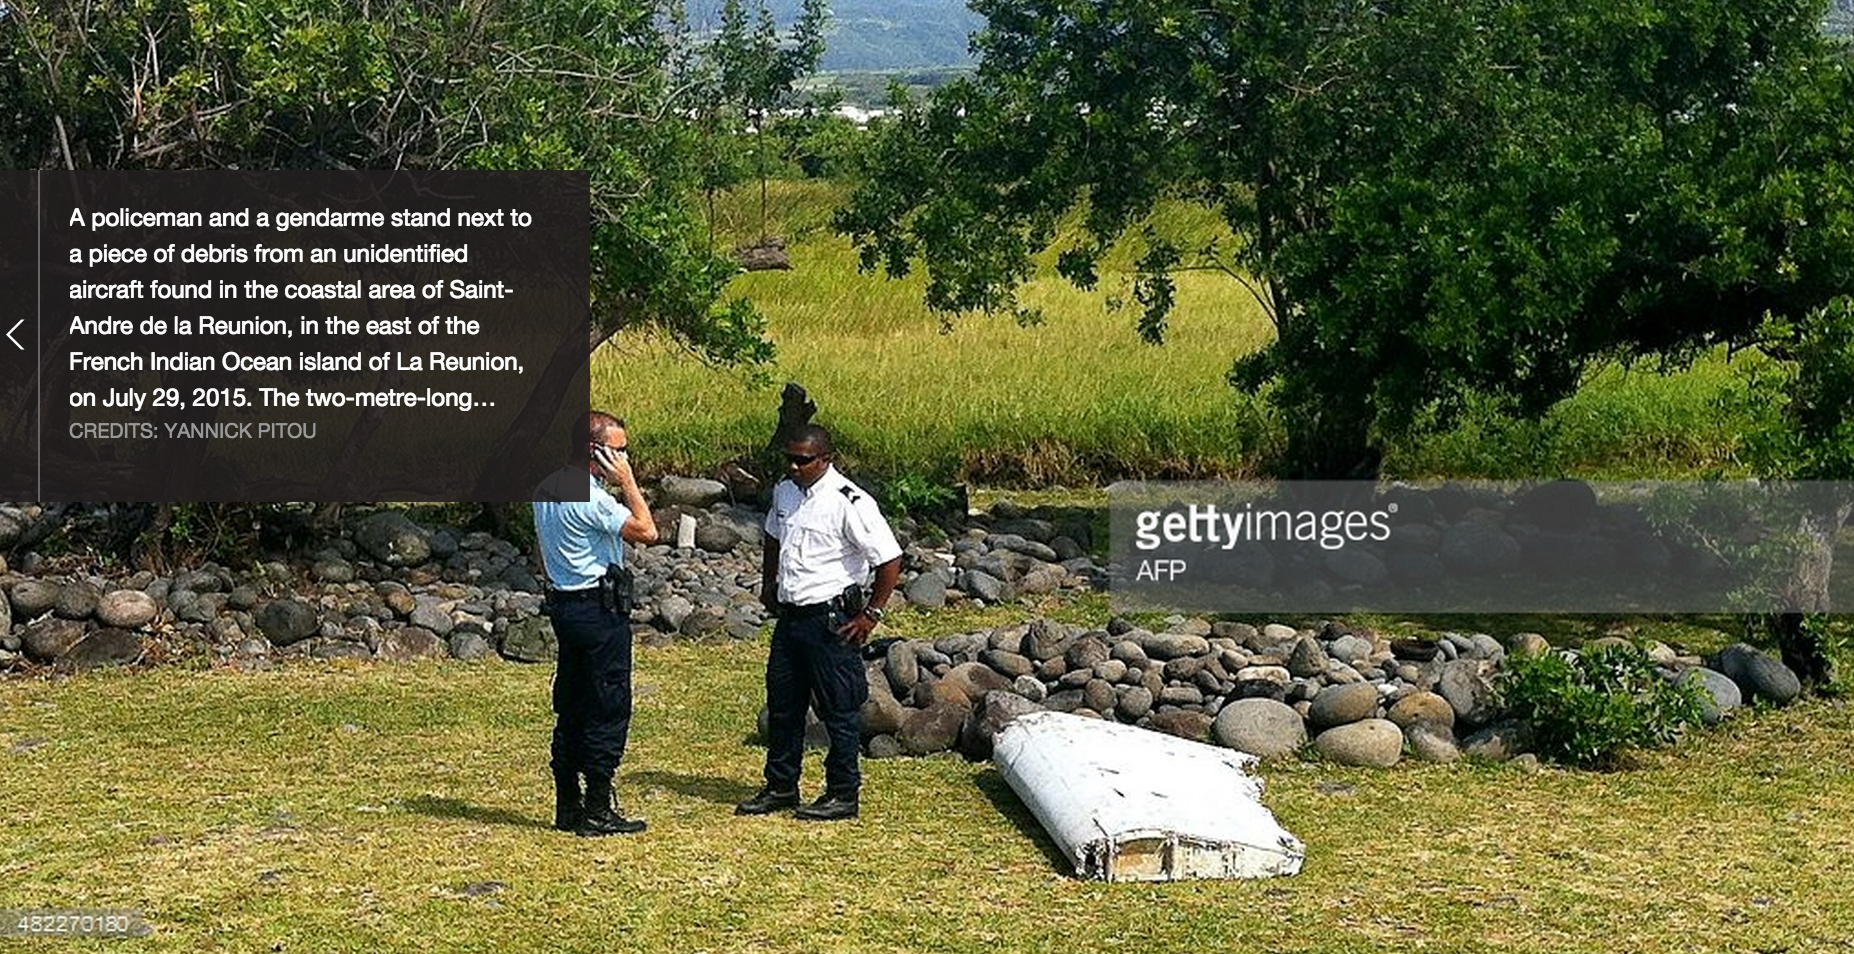 Het aangespoelde onderdeel op Réunion, wat mogelijk de flaperon is van MH370.